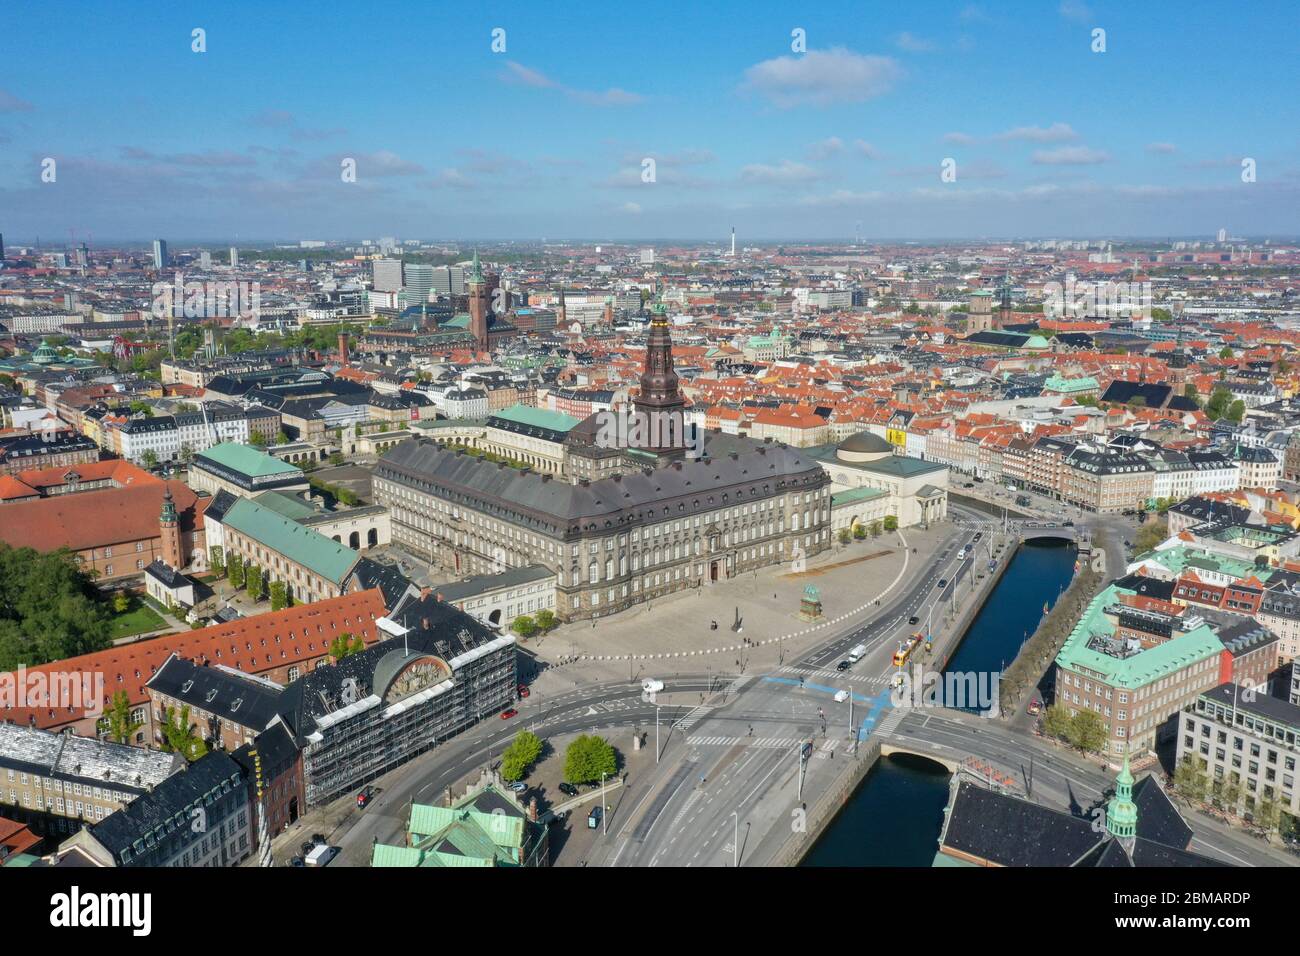 Palacio de Christiansborg en Copenhague, Dinamarca Foto de stock